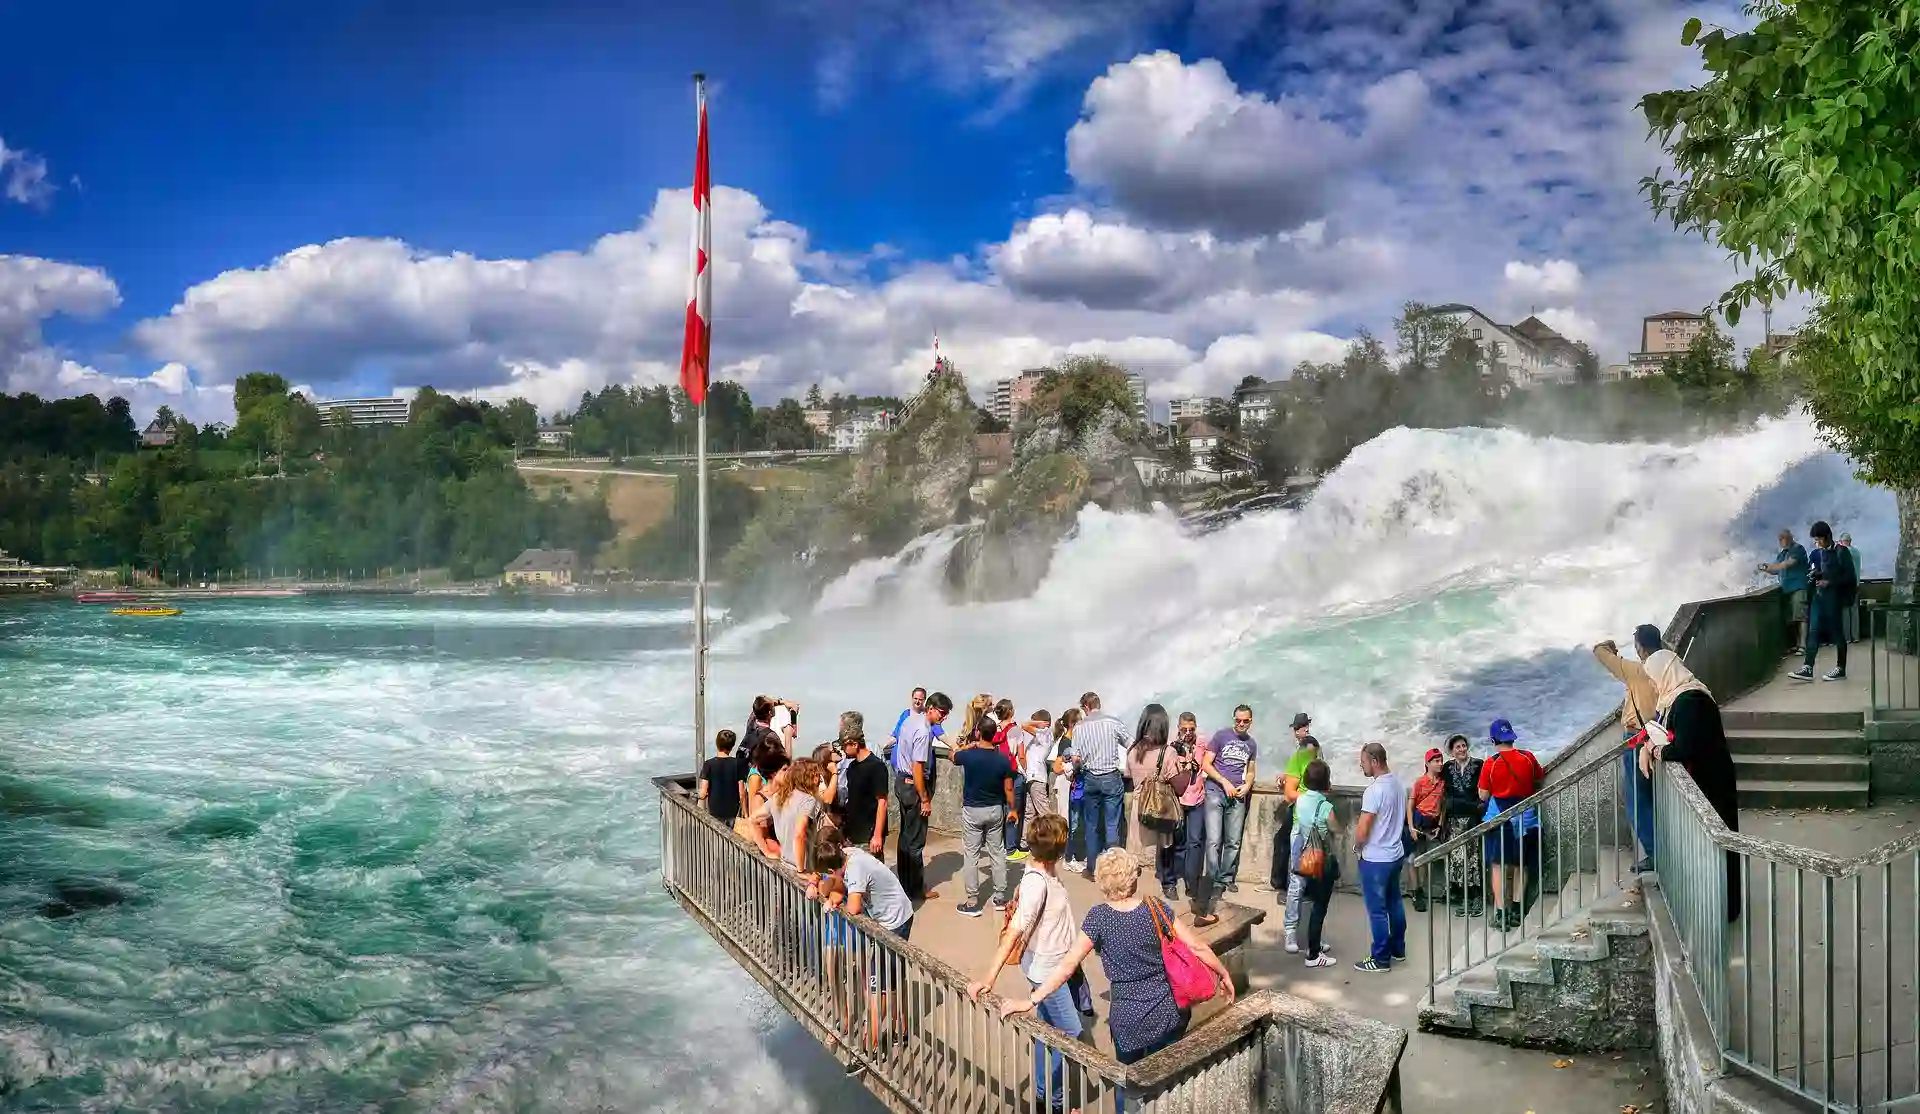 Day 6 - Black Forest & Rhine Falls – Zurich